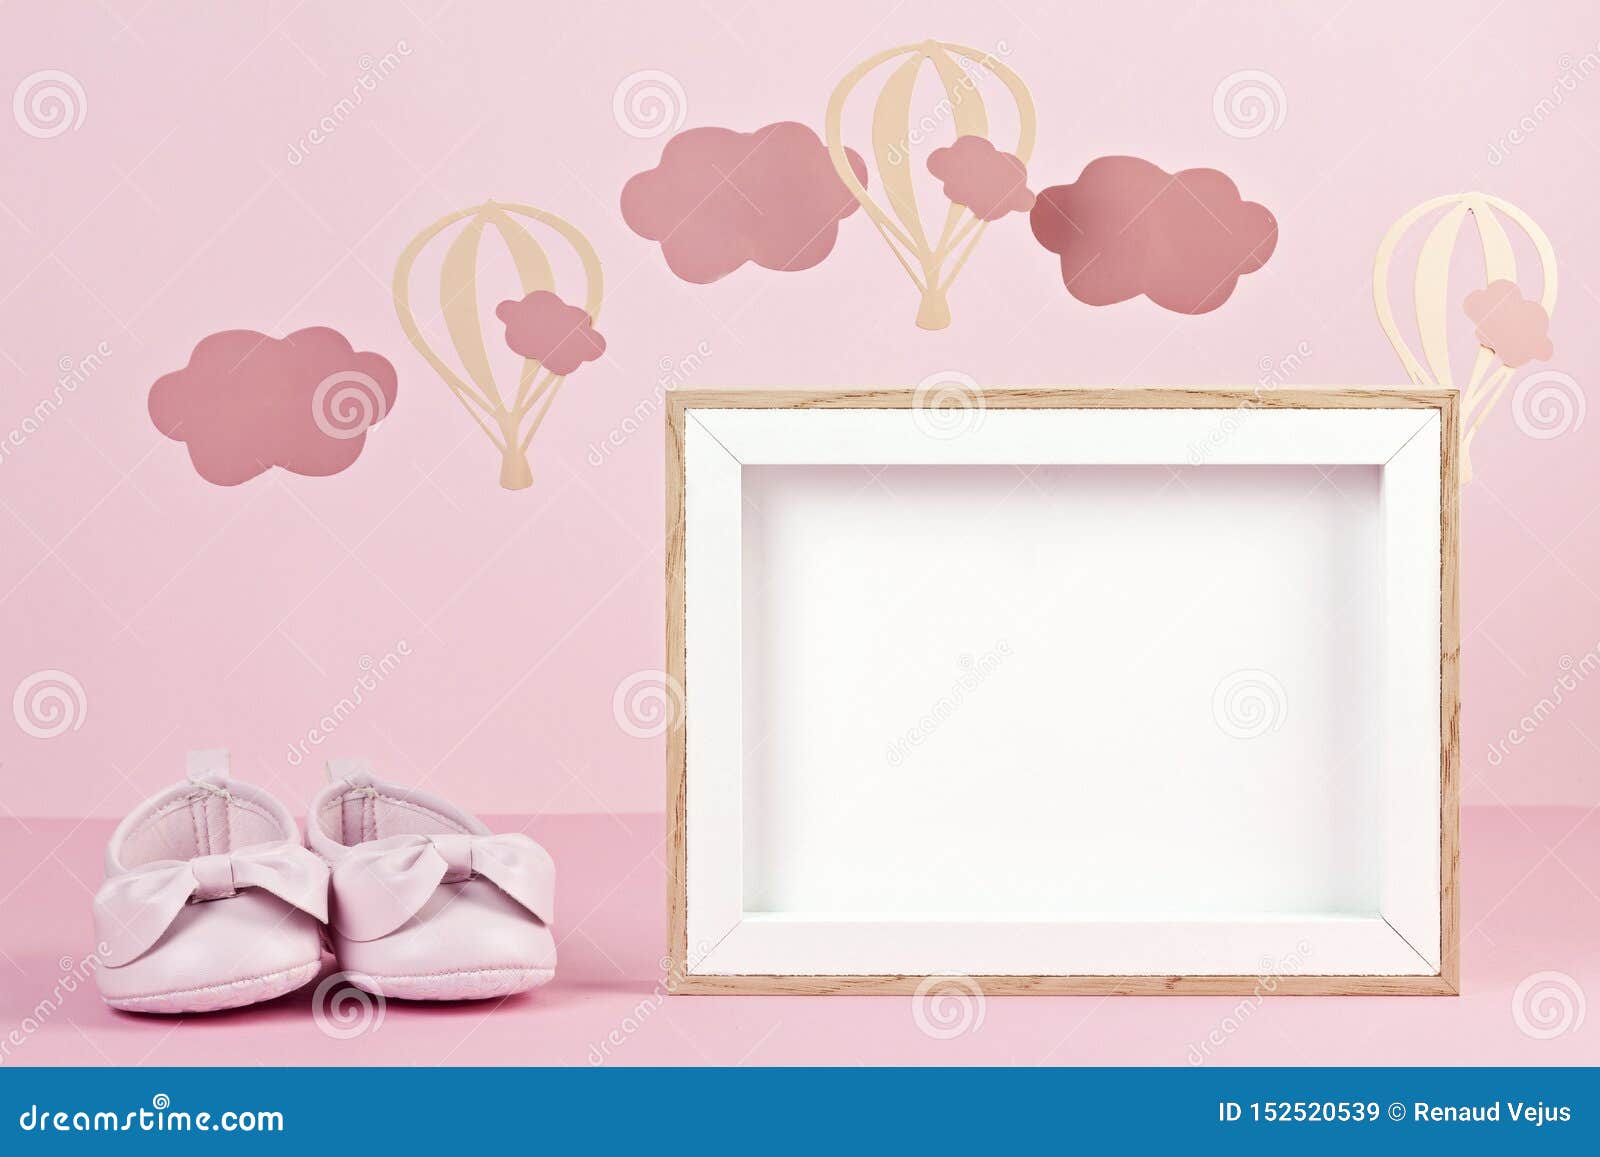 Hình ảnh chủ đề baby pink mang lại sự dễ thương và ngọt ngào cho phòng của bạn. Chúng giúp tạo cảm giác thoải mái và thư giãn, và là một lựa chọn hoàn hảo cho những người yêu thích sắc hồng dịu dàng. Hãy cùng khám phá những hình ảnh chủ đề baby pink để tạo sự khác biệt cho không gian sống của bạn!